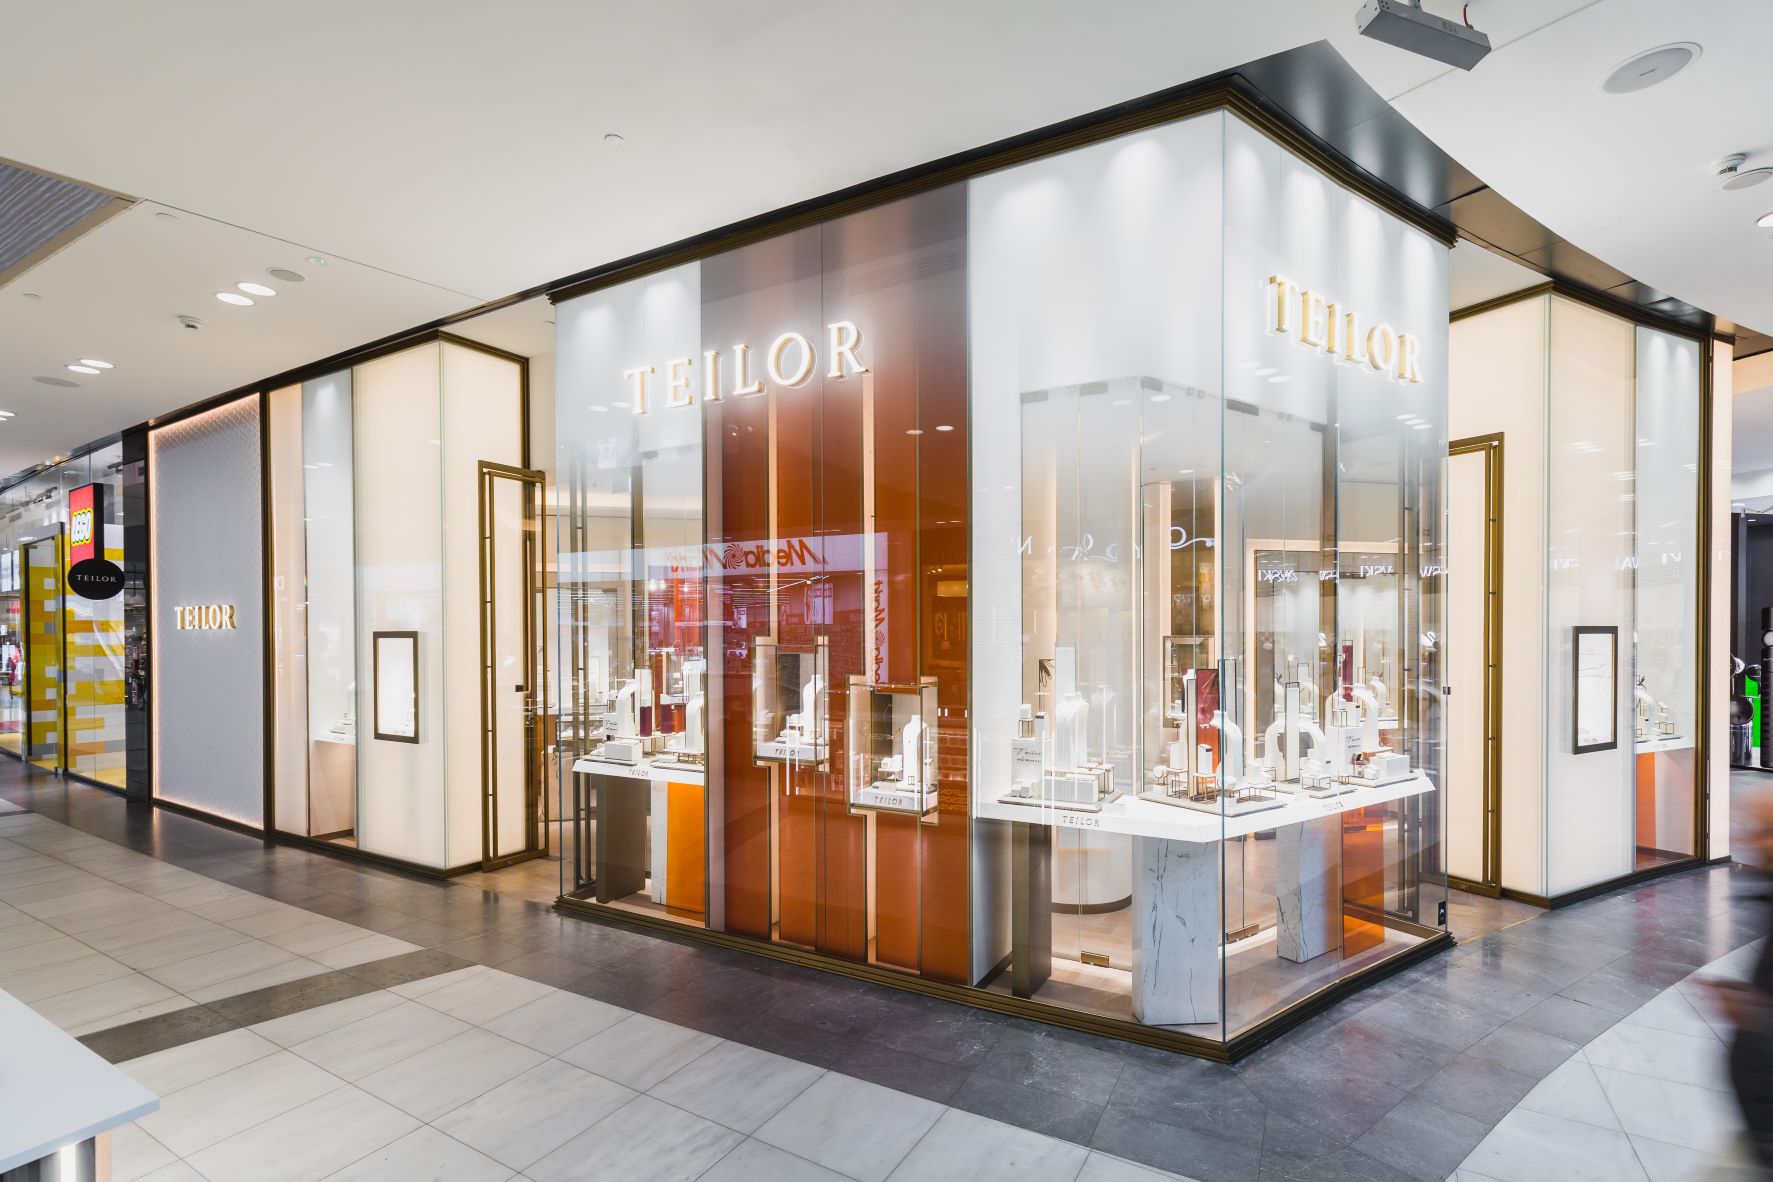 Lanţul de magazine de bijuterii de lux TEILOR continuă să se extindă în Polonia, cu un magazin în Wroclaw, şi ajunge la un portofoliu de 13 unităţi în afara României